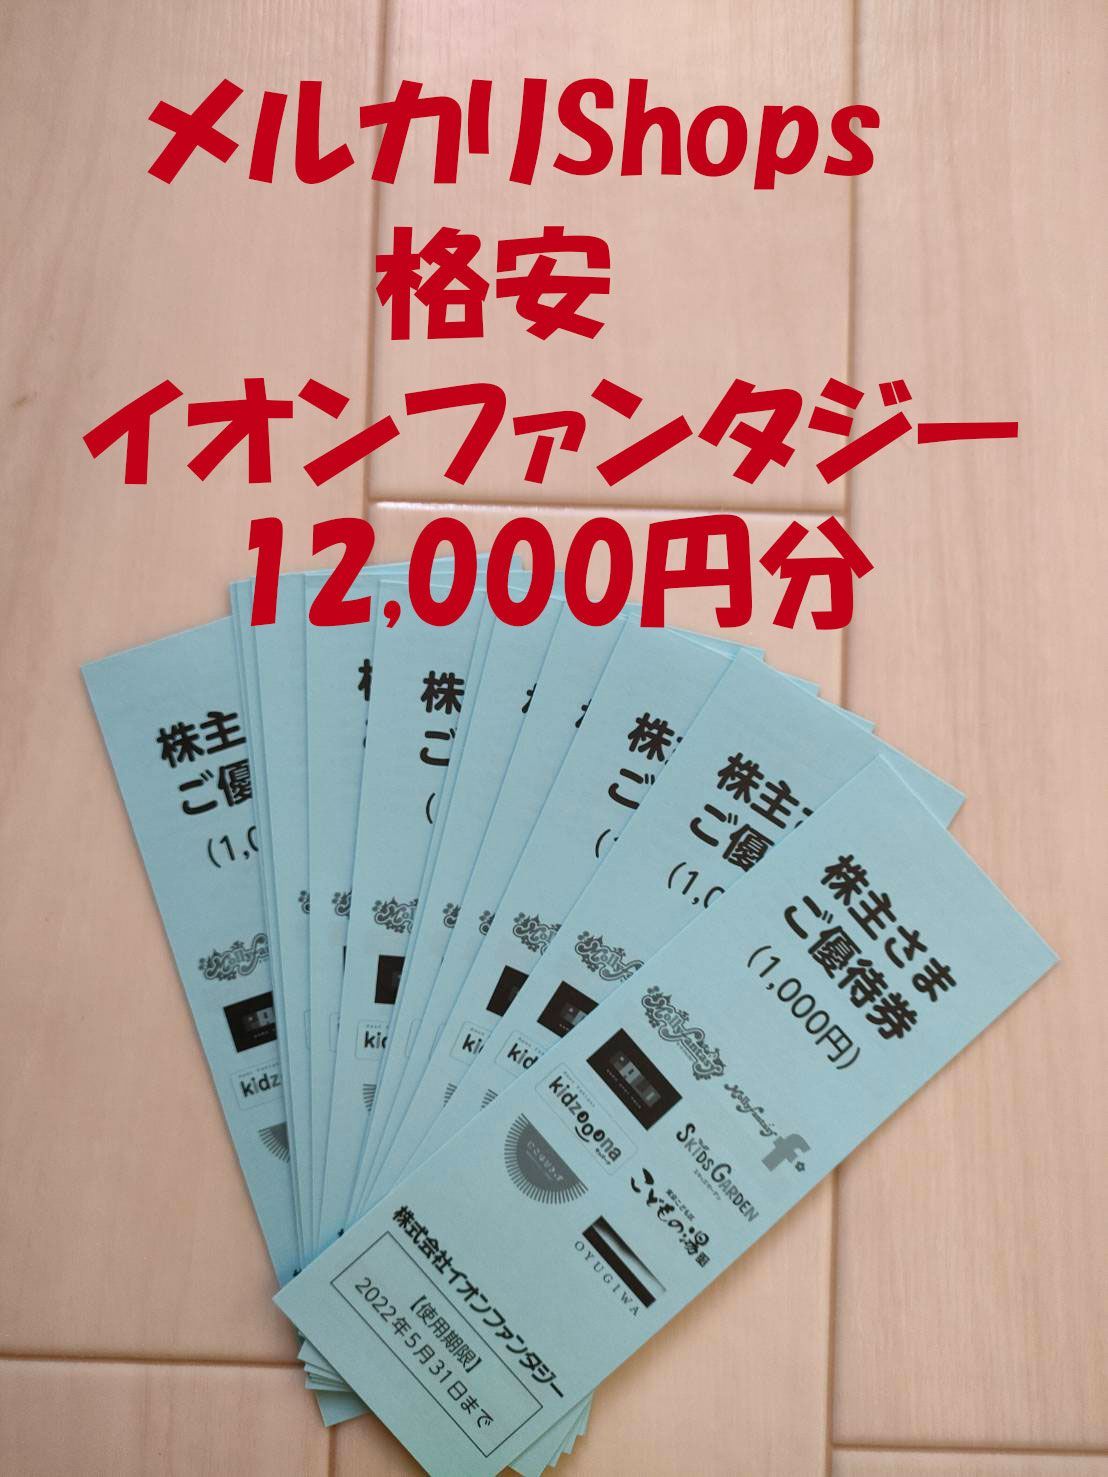 イオンファンタジー 株主優待券 12,000円分 送料無料 モーリー